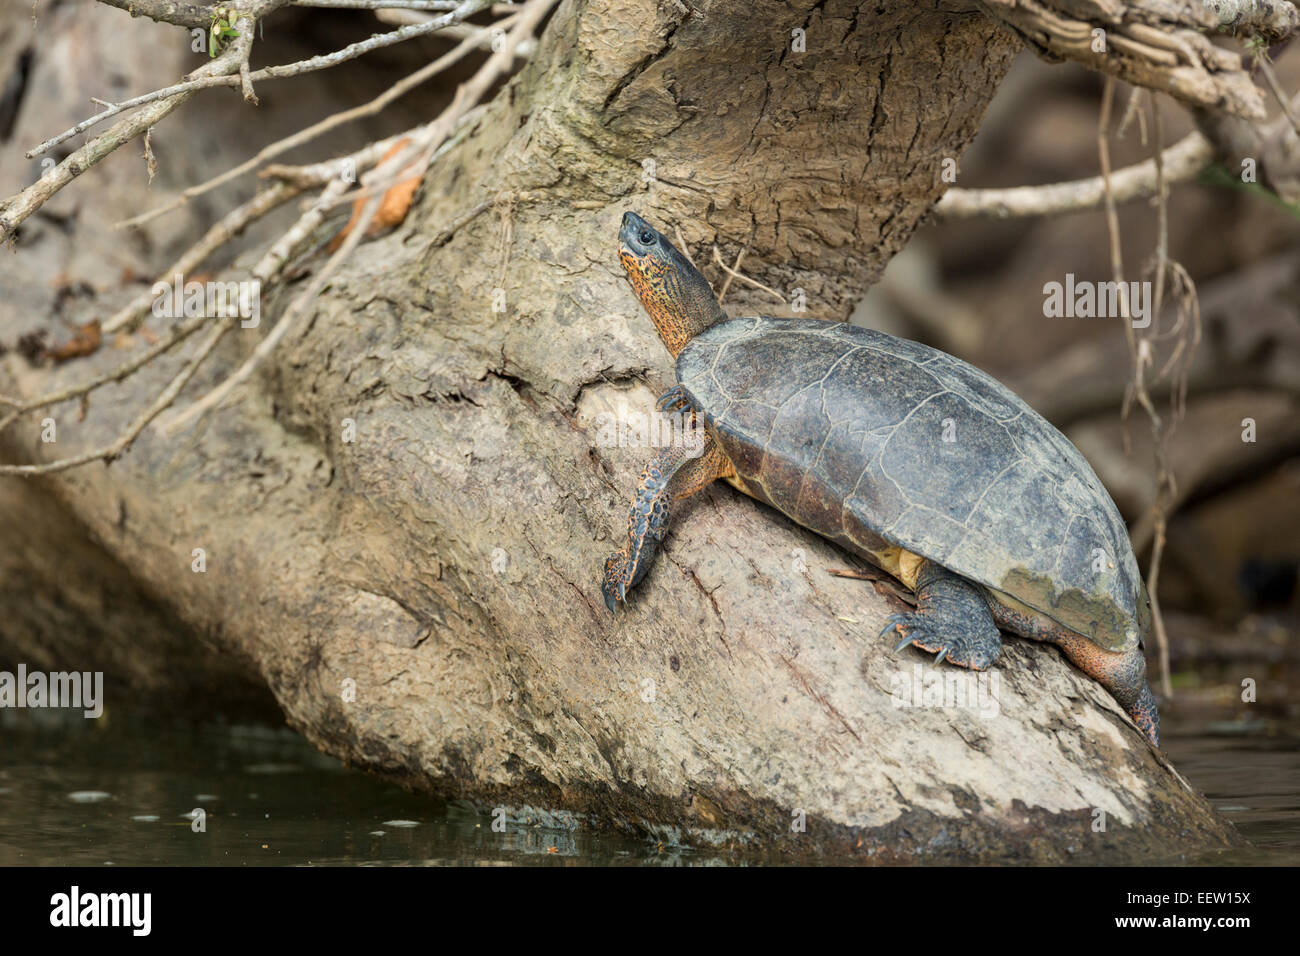 Black River Turtle Rhinoclemmys funerea in appoggio sul tronco nel Rio di San Carlos, vicino Boca Tapada, Costa Rica, febbraio 2014. Foto Stock